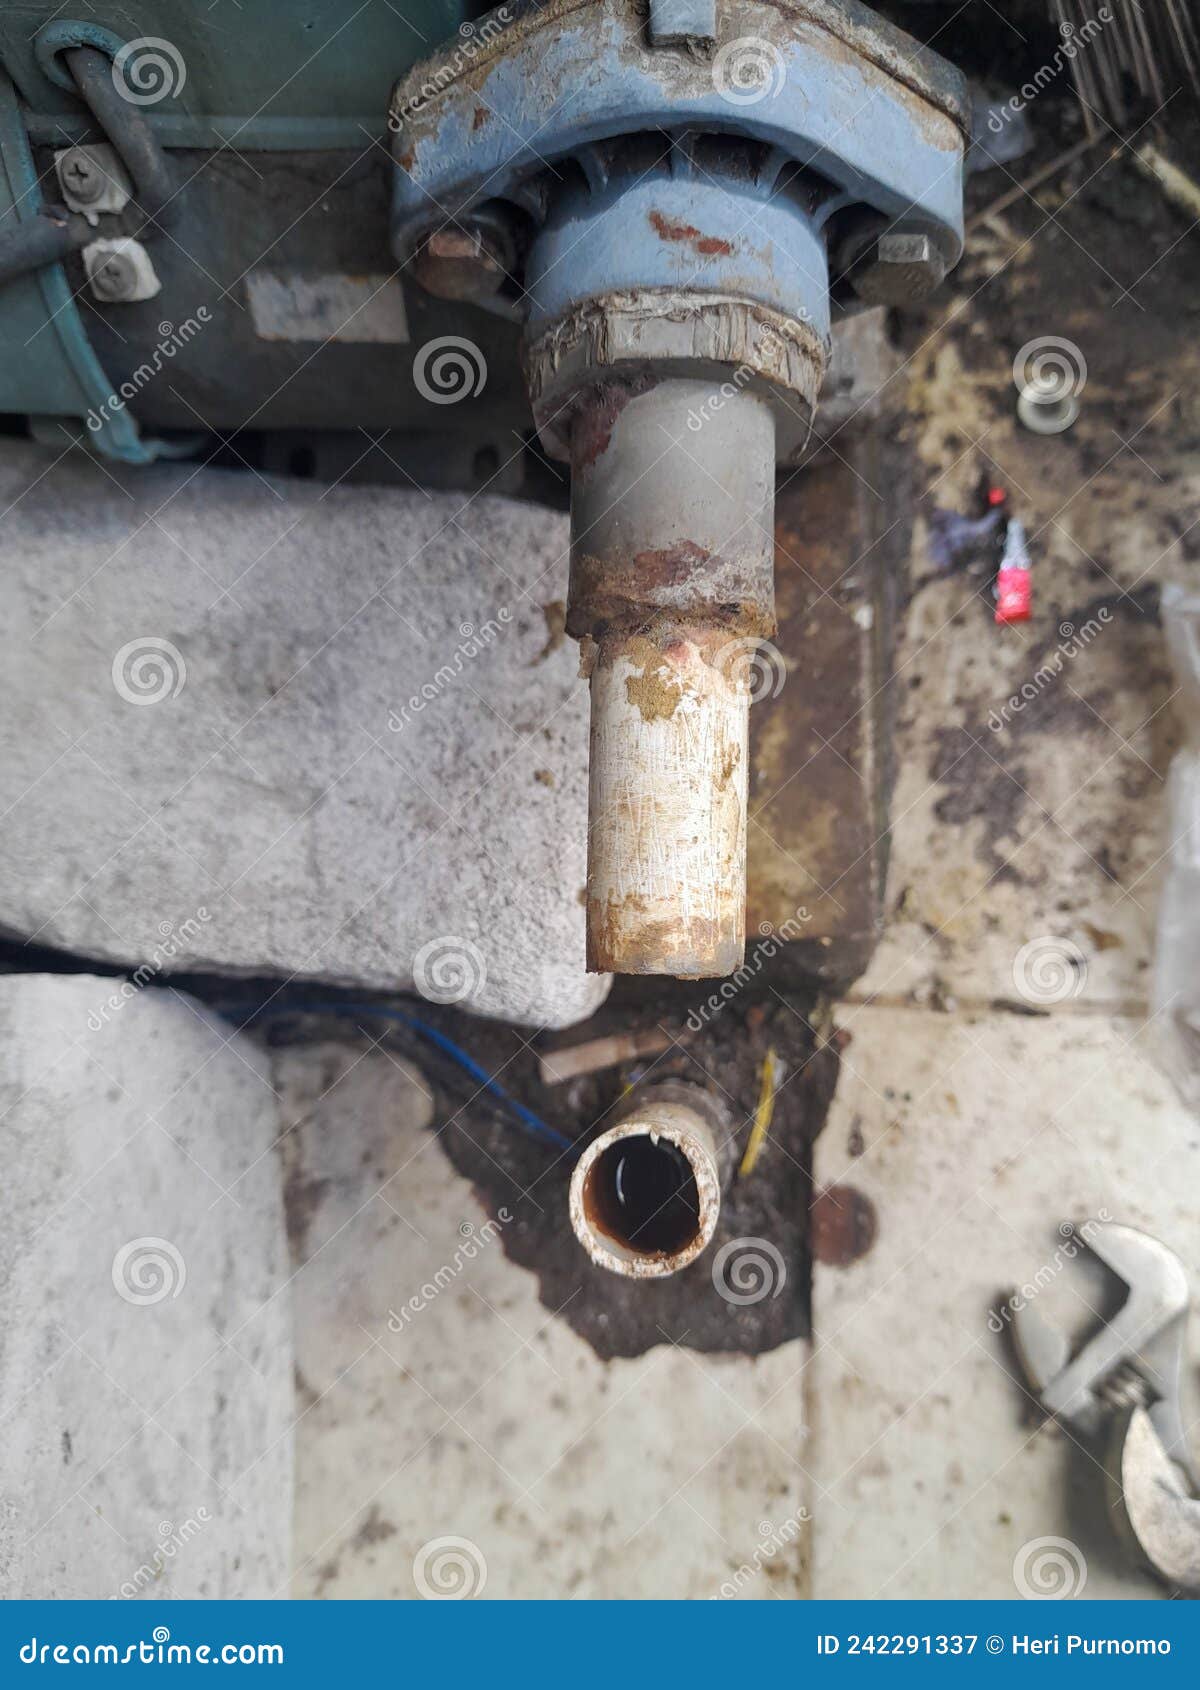 Die Beschädigte Wasserleitung Wird Repariert Und Mit L Verbindung